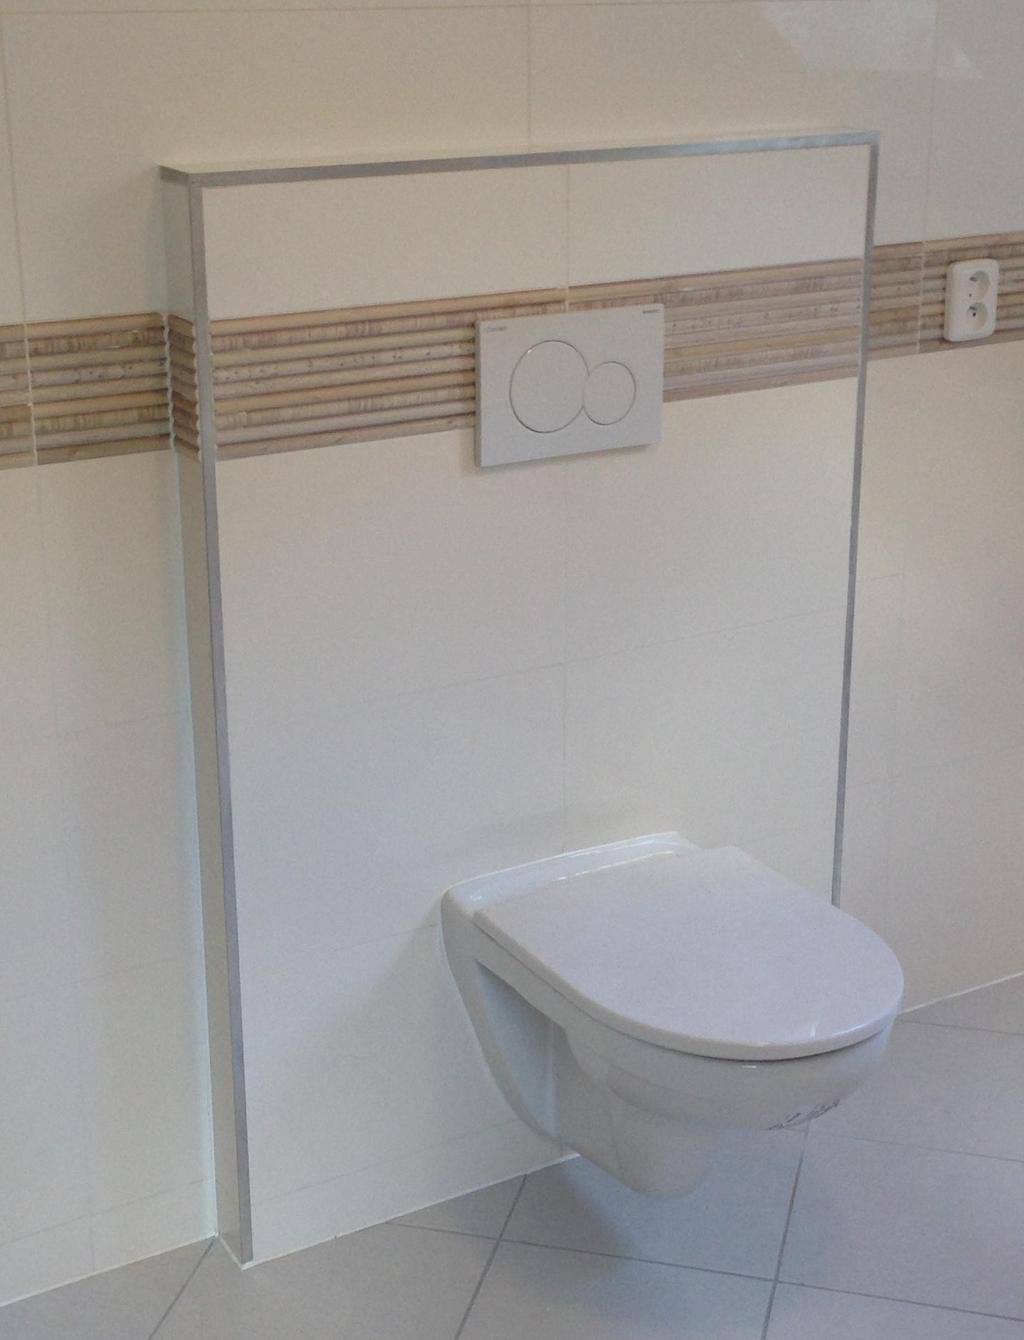 Sanitární objekty pouze dodávka Vybavení koupelny a wc v přízemí: 1 ks sprchový kout Sanswiss Topline 90 čvrtkruh s vaničkou